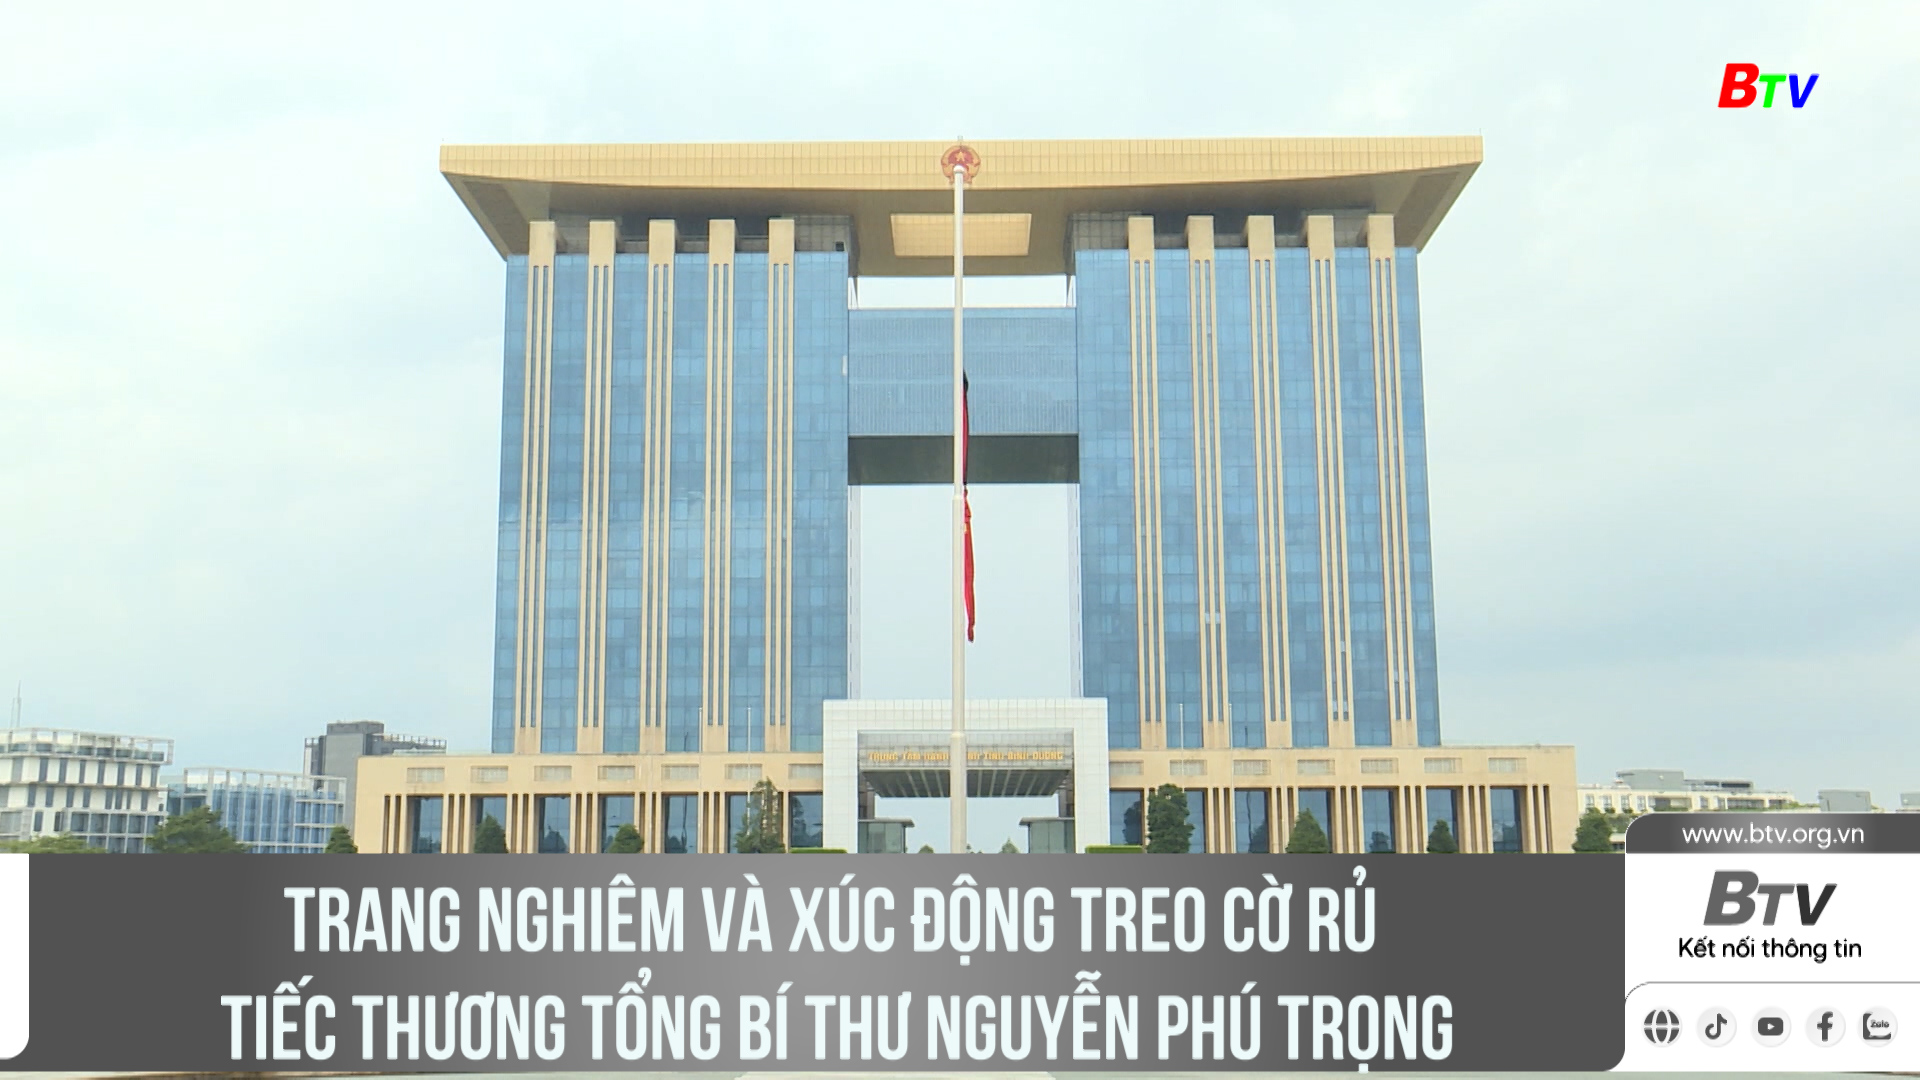 Trang nghiêm và xúc động treo cờ rủ tiếc thương Tổng Bí thư Nguyễn Phú Trọng